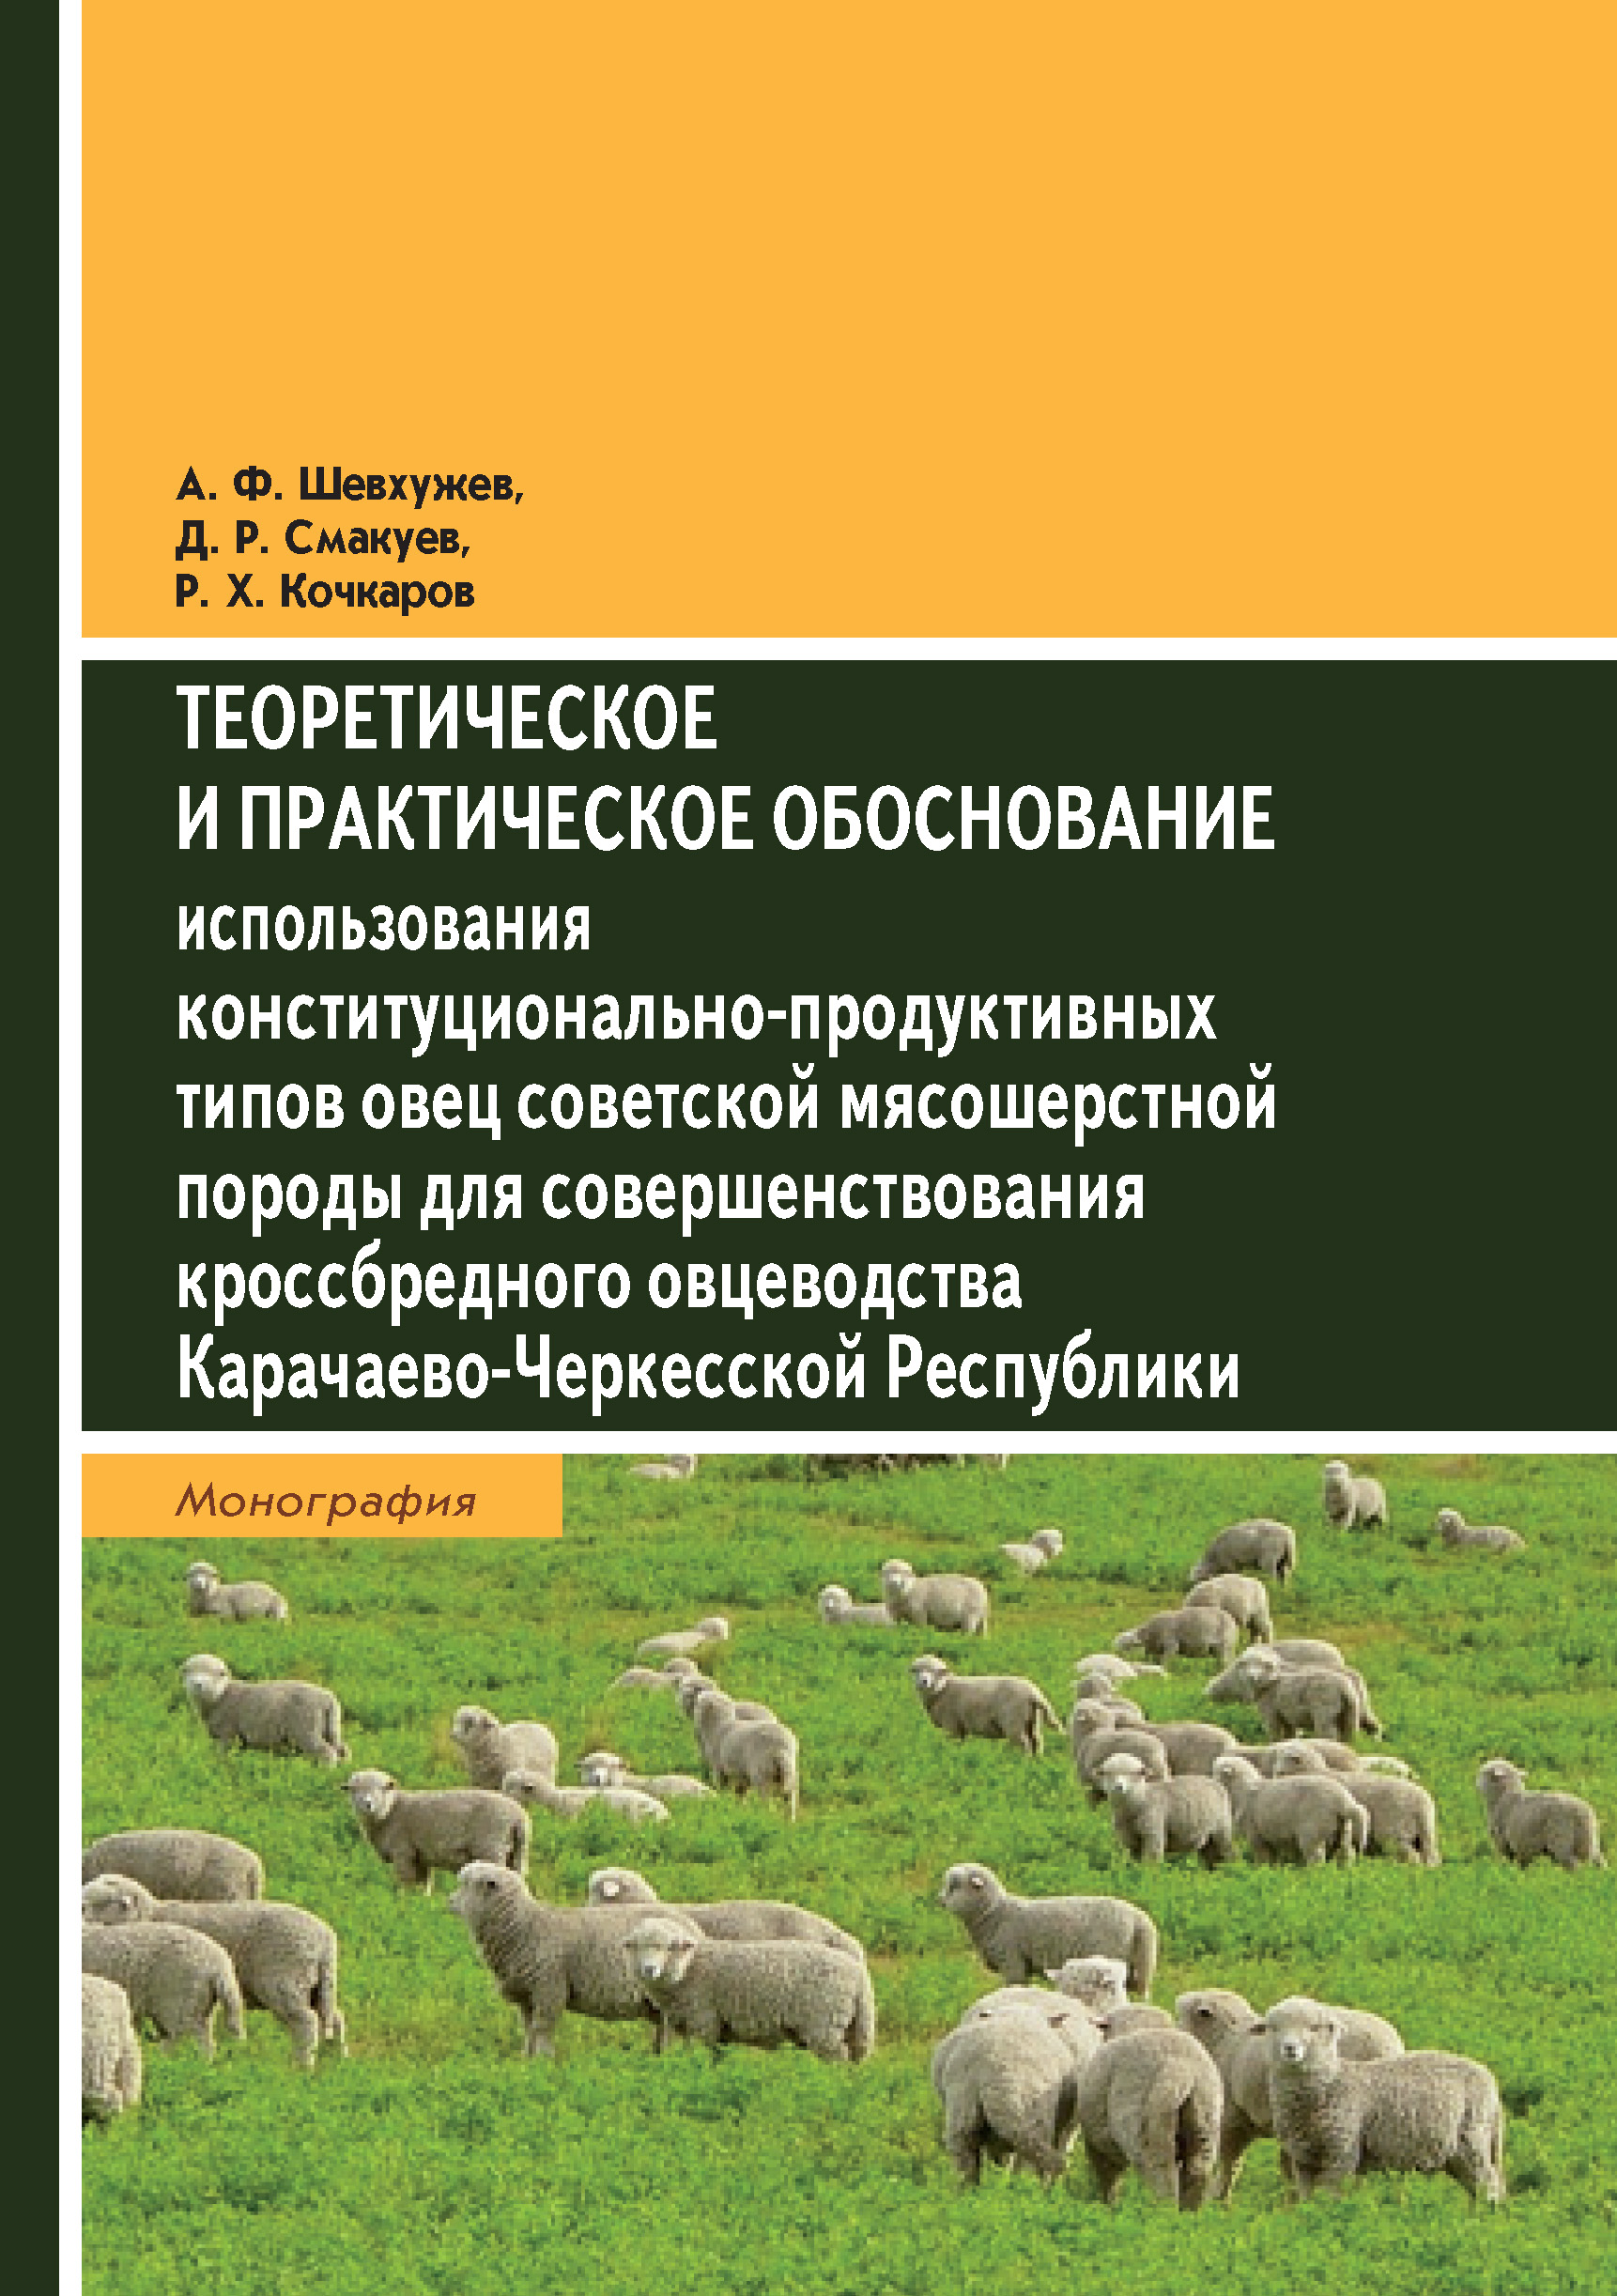 Теоретическое и практическое обоснование использования конституционально-продуктивных типов овец советской мясошерстной породы для совершенствования кроссбредного овцеводства Карачаево-Черкесской Республики